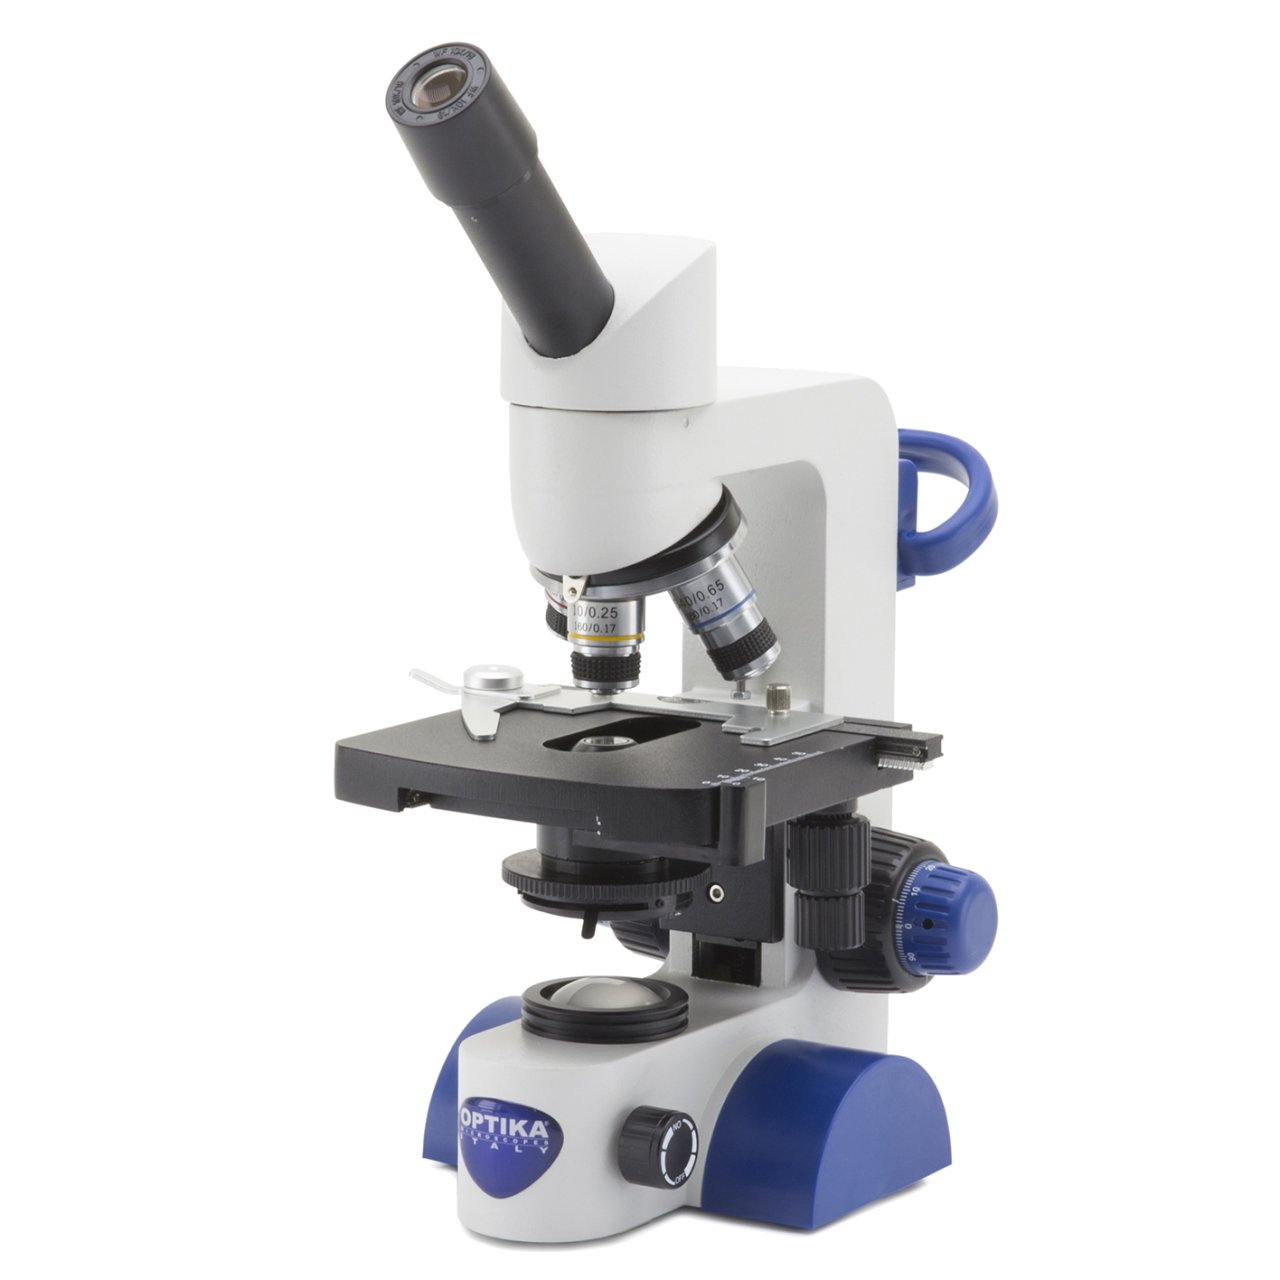 OPTIKA B-65 Monoküler Mikroskop - 1000x Mikroskop